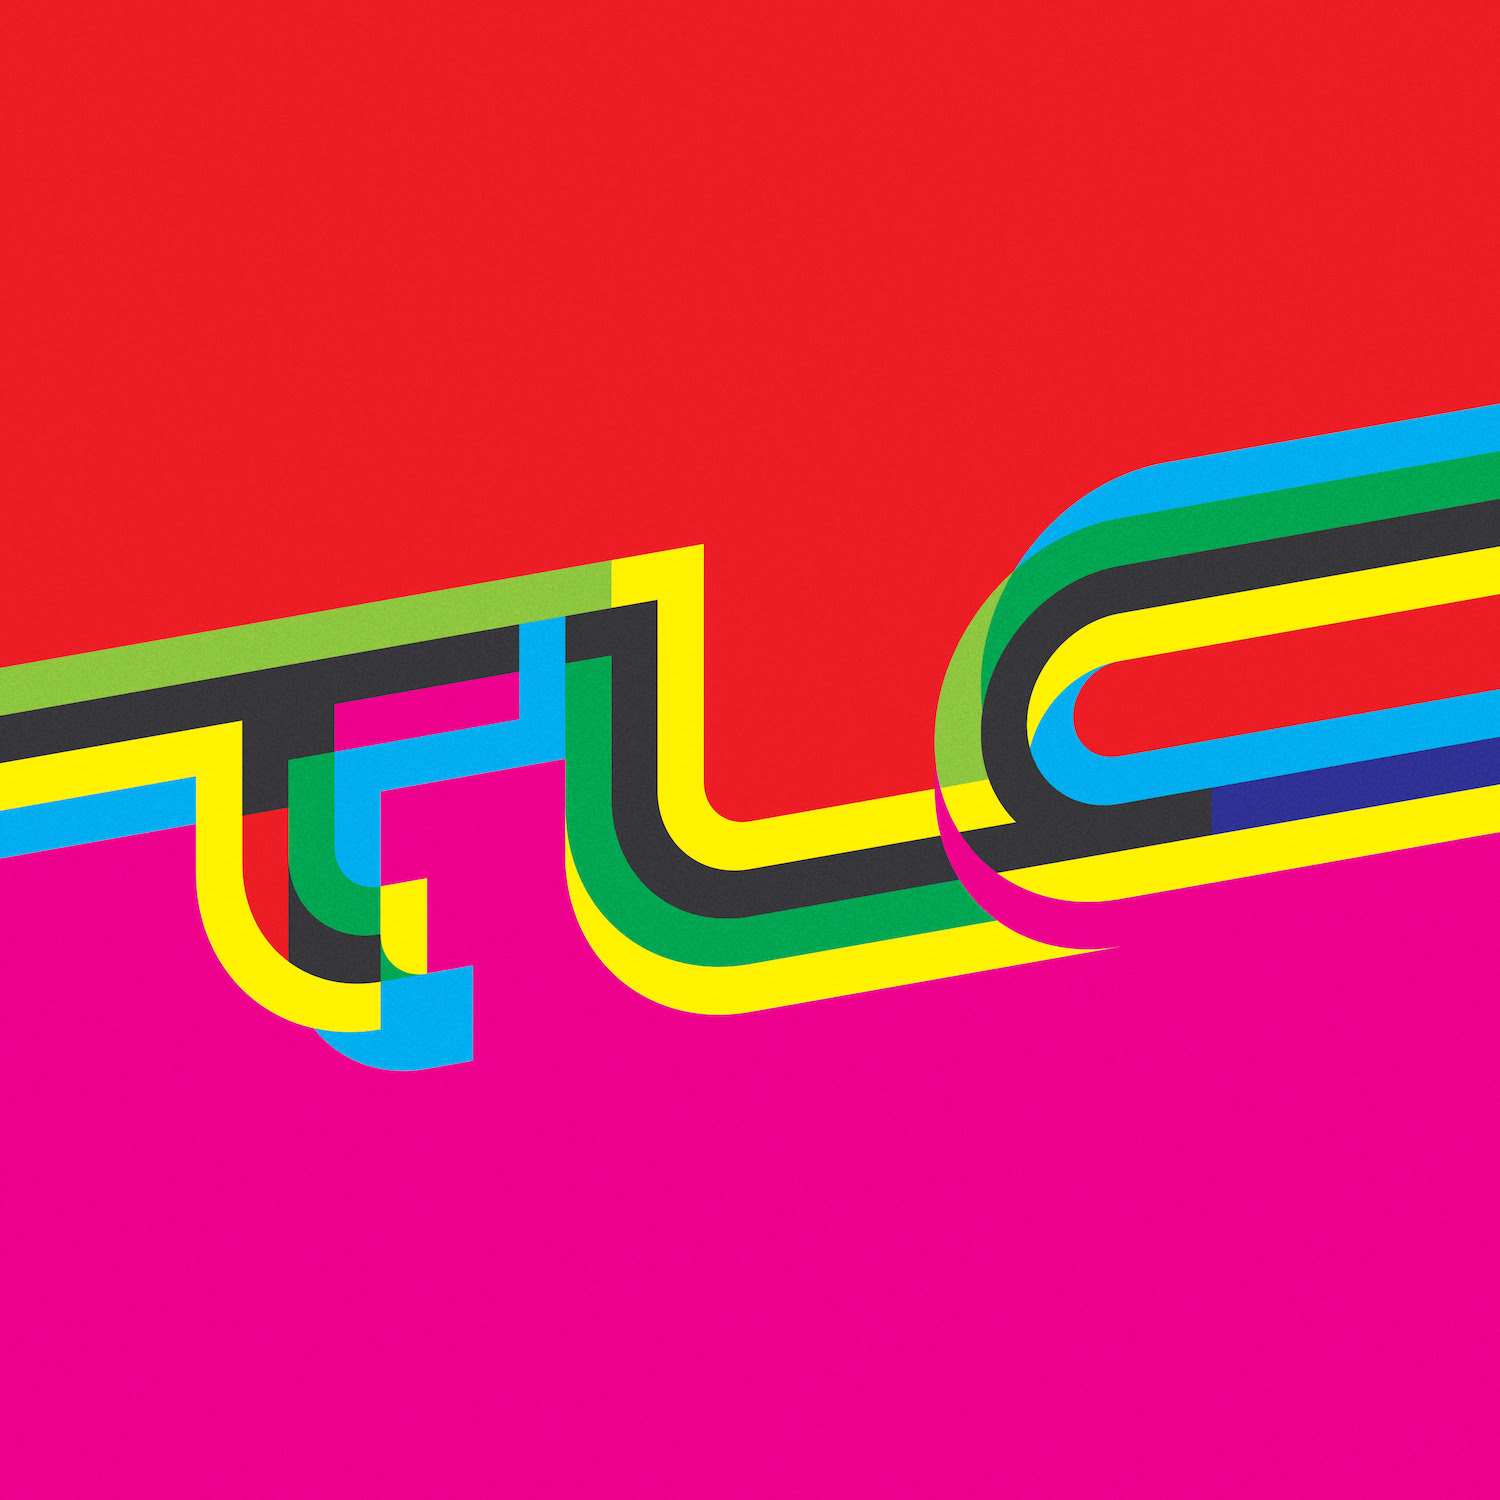 TLC - TLC album art